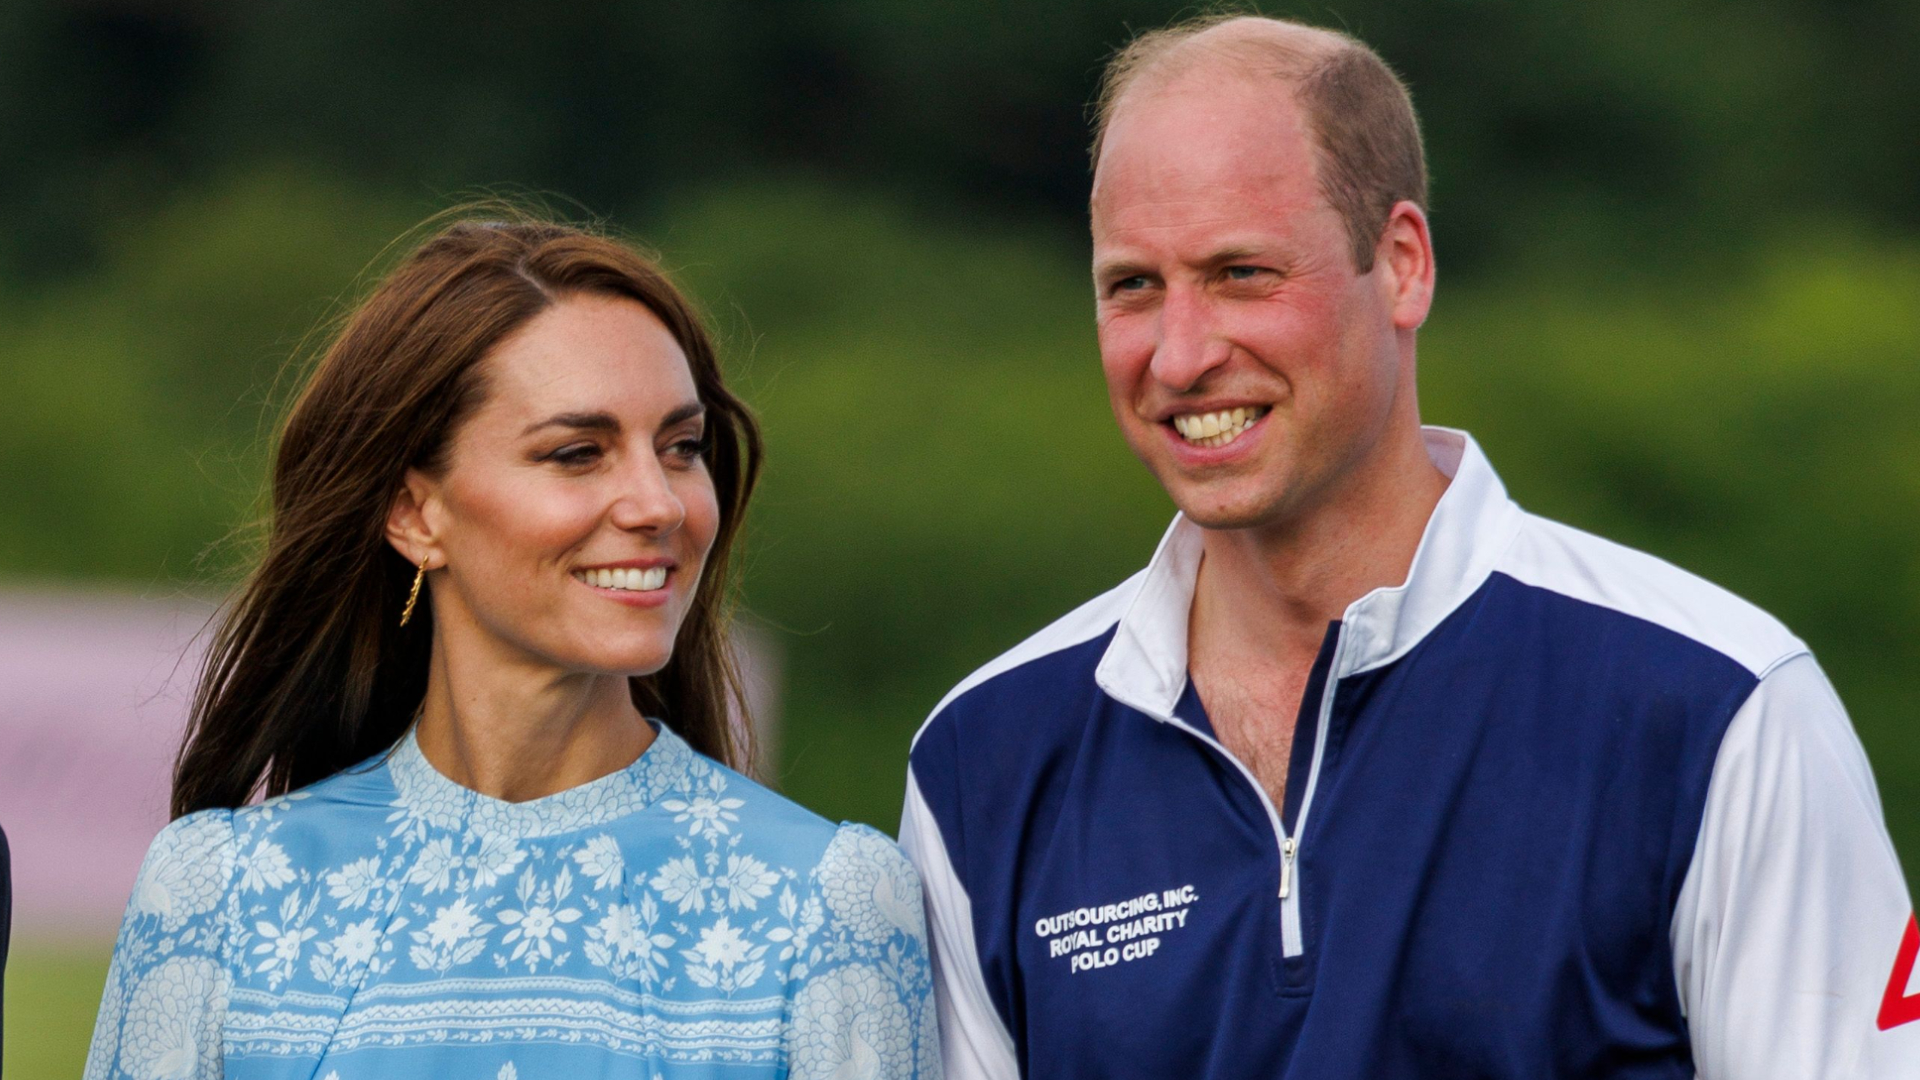 Autor revela apelido curioso de príncipe William para Kate Middleton inspirado na rainha Elizabeth